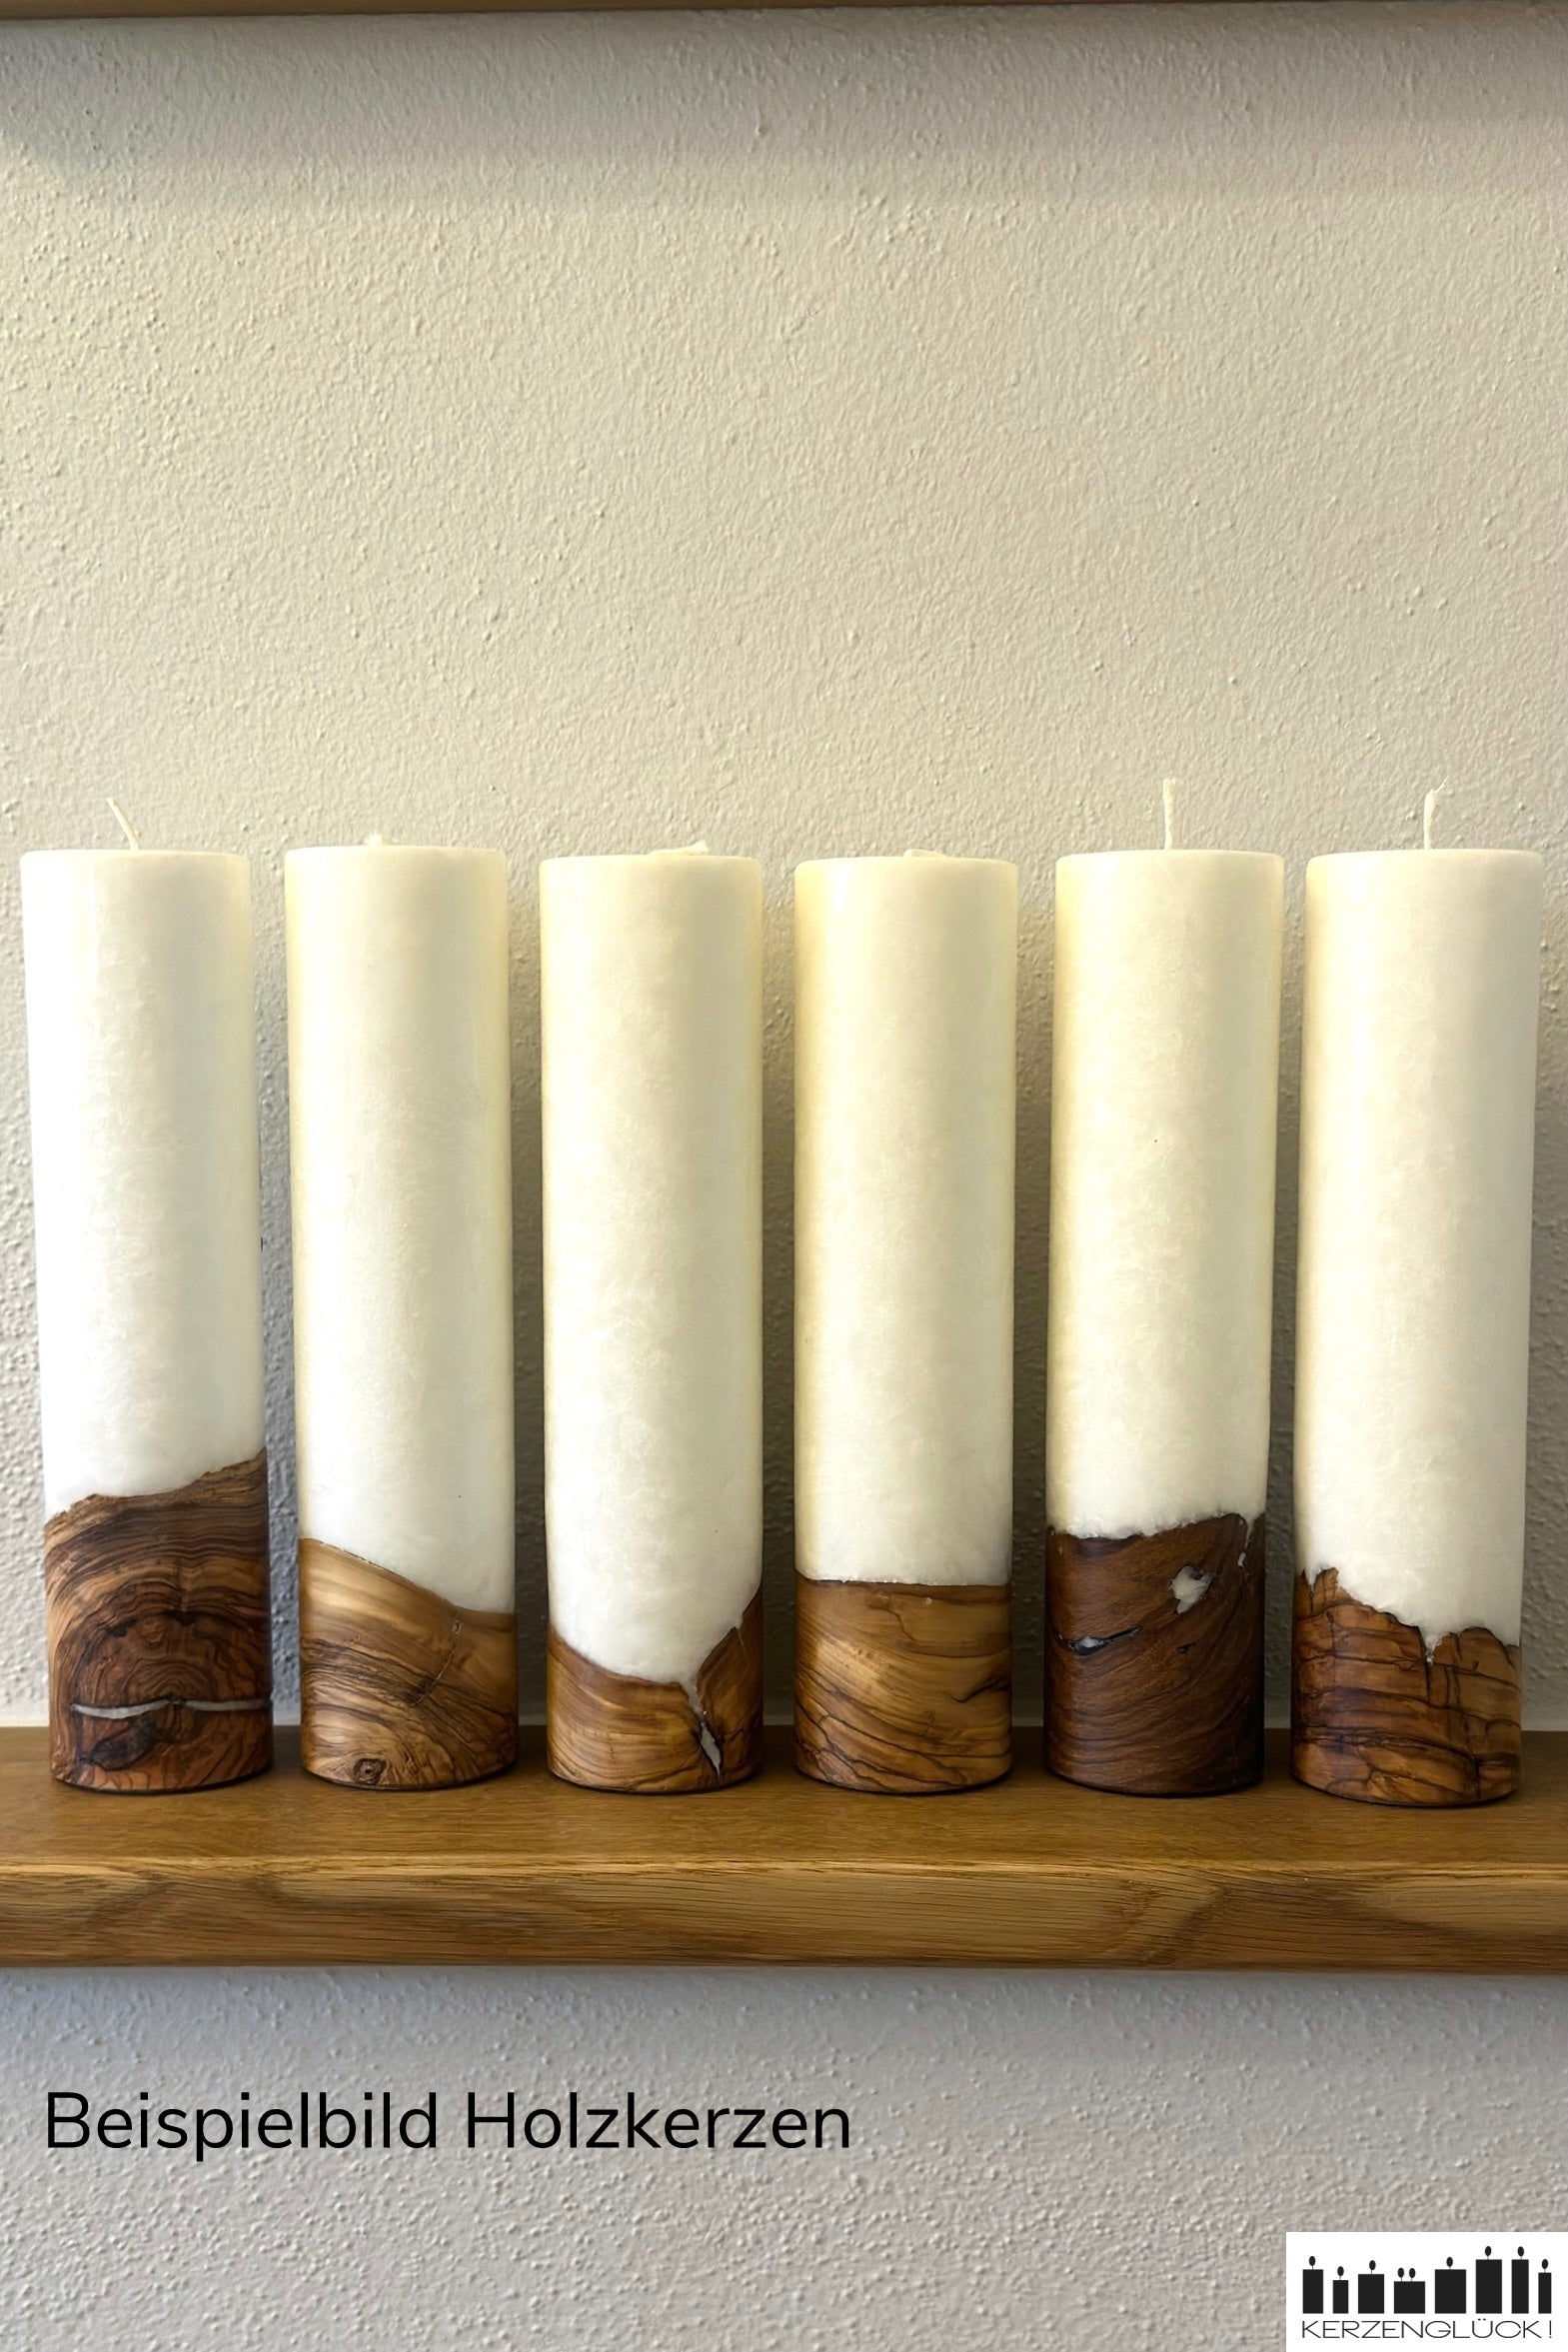 Sechs Holzkerzen mit unterschiedlichem Holzanteil nebeneinander